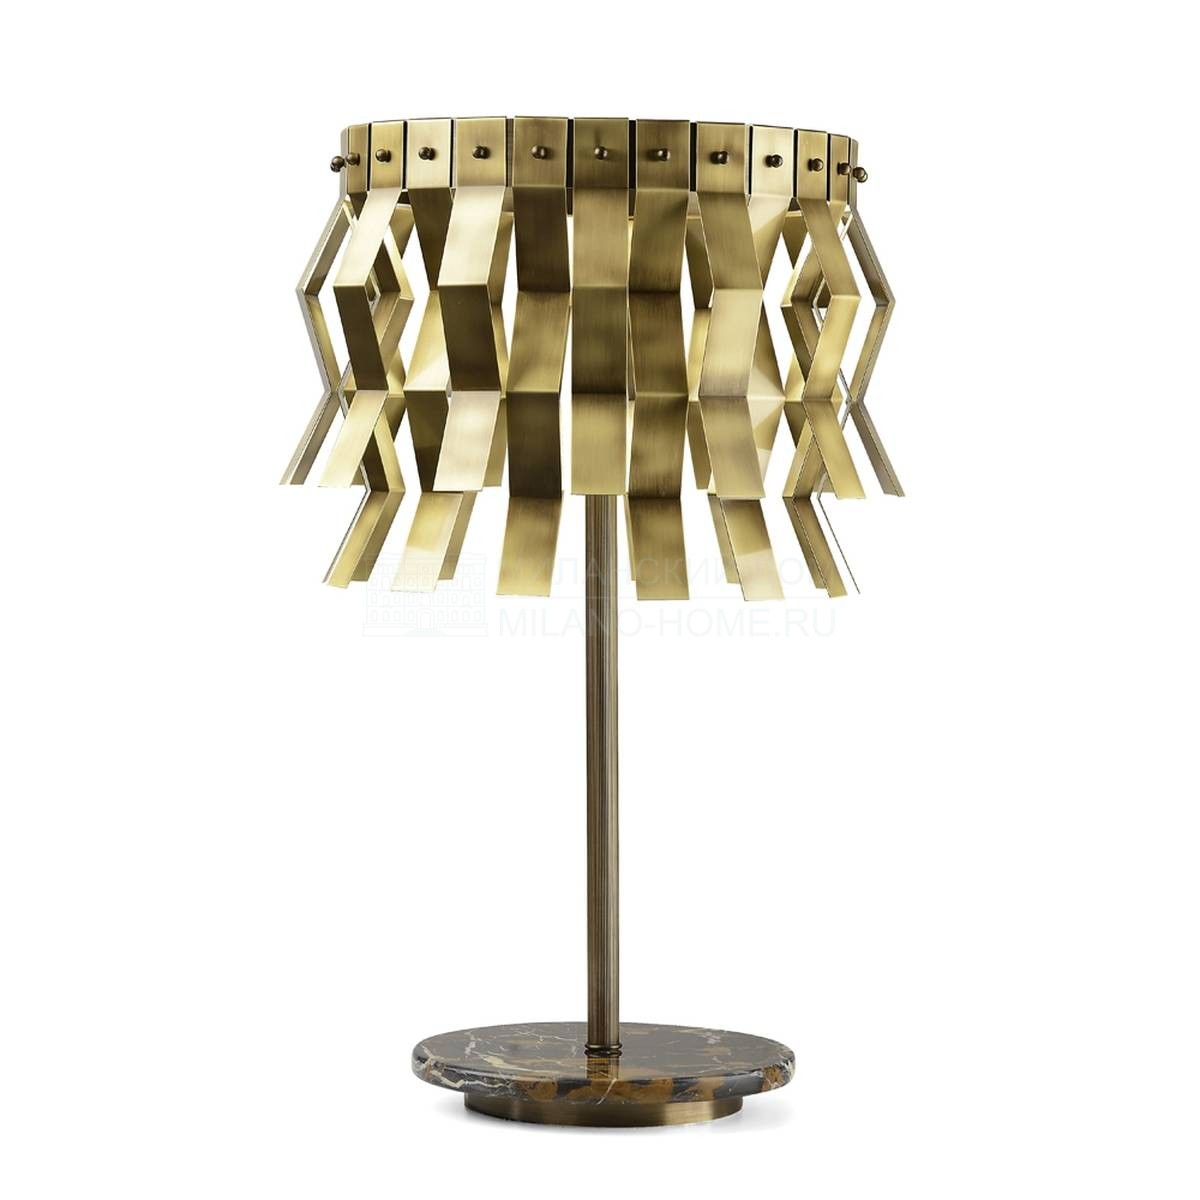 Настольная лампа Veronica table lamp из Италии фабрики MARIONI